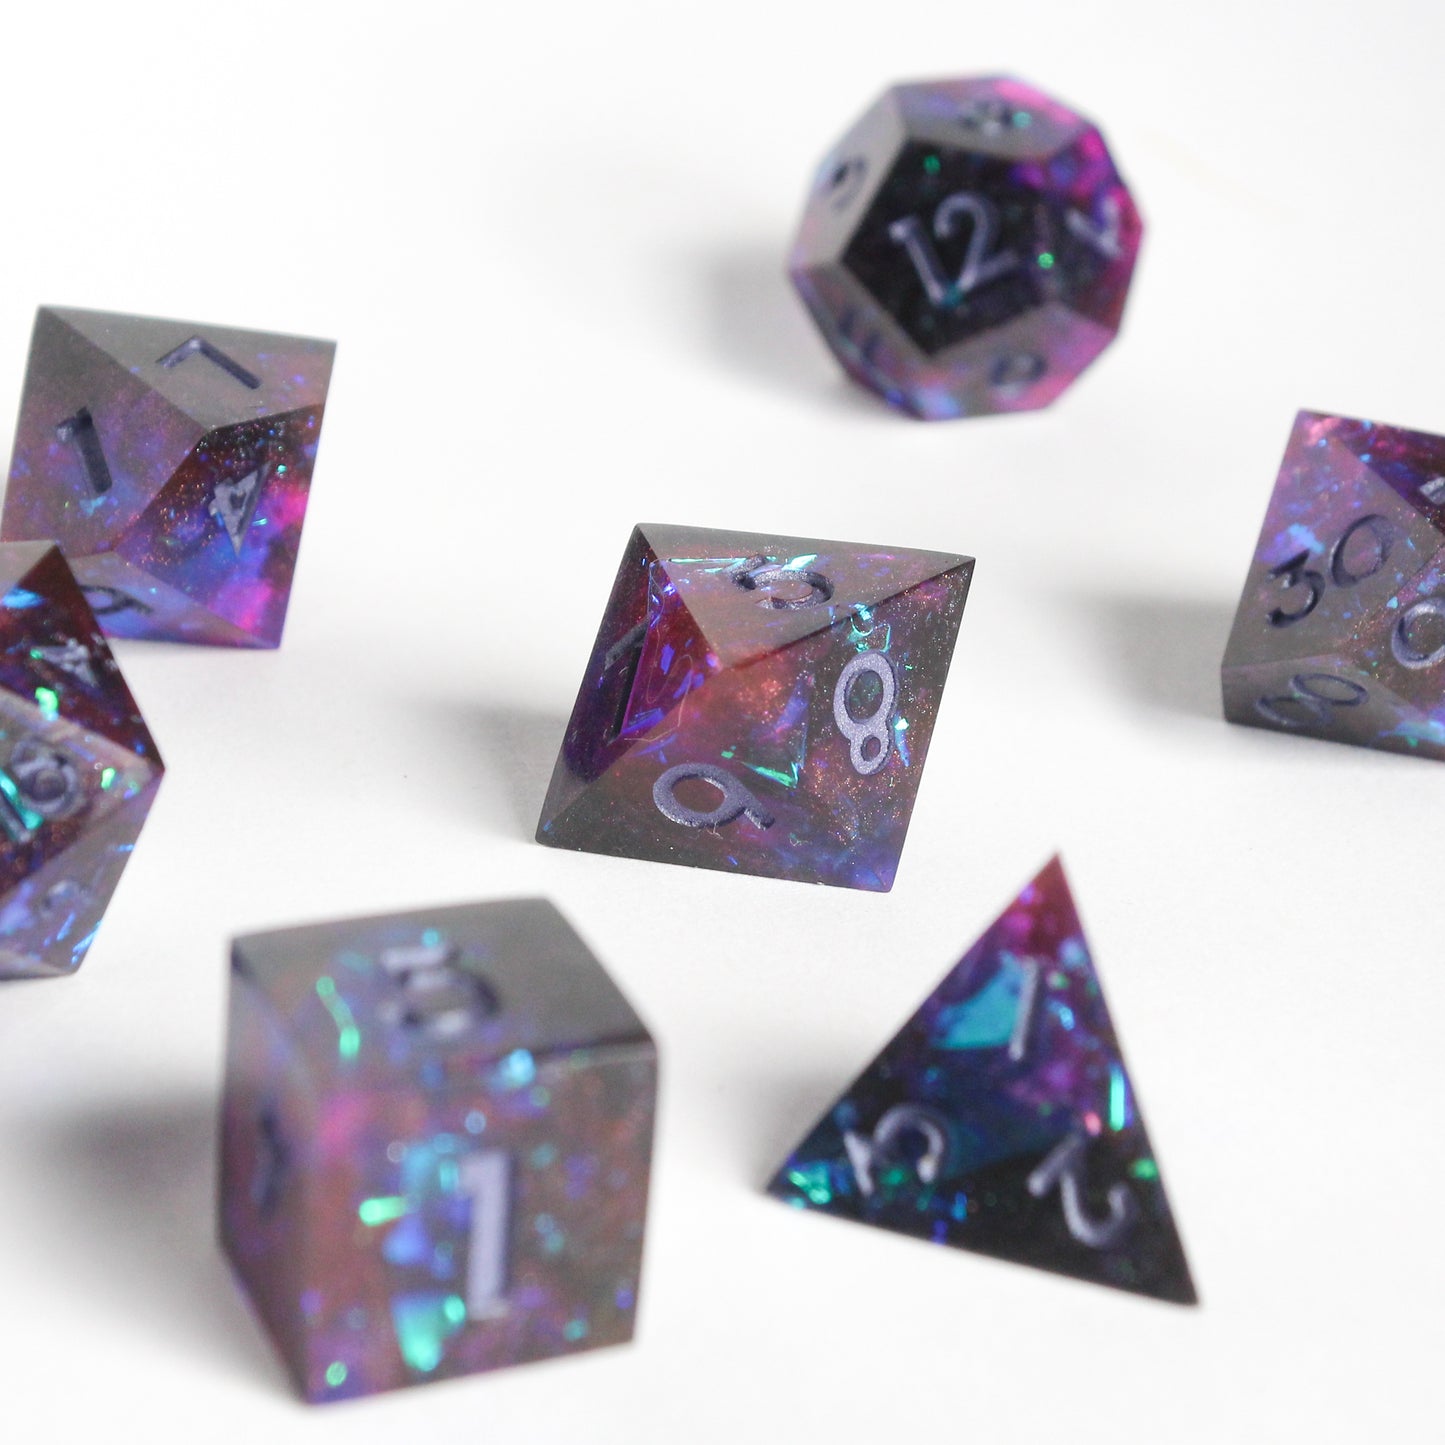 Intergalactic – 7-piece Polyhedral Dice Set